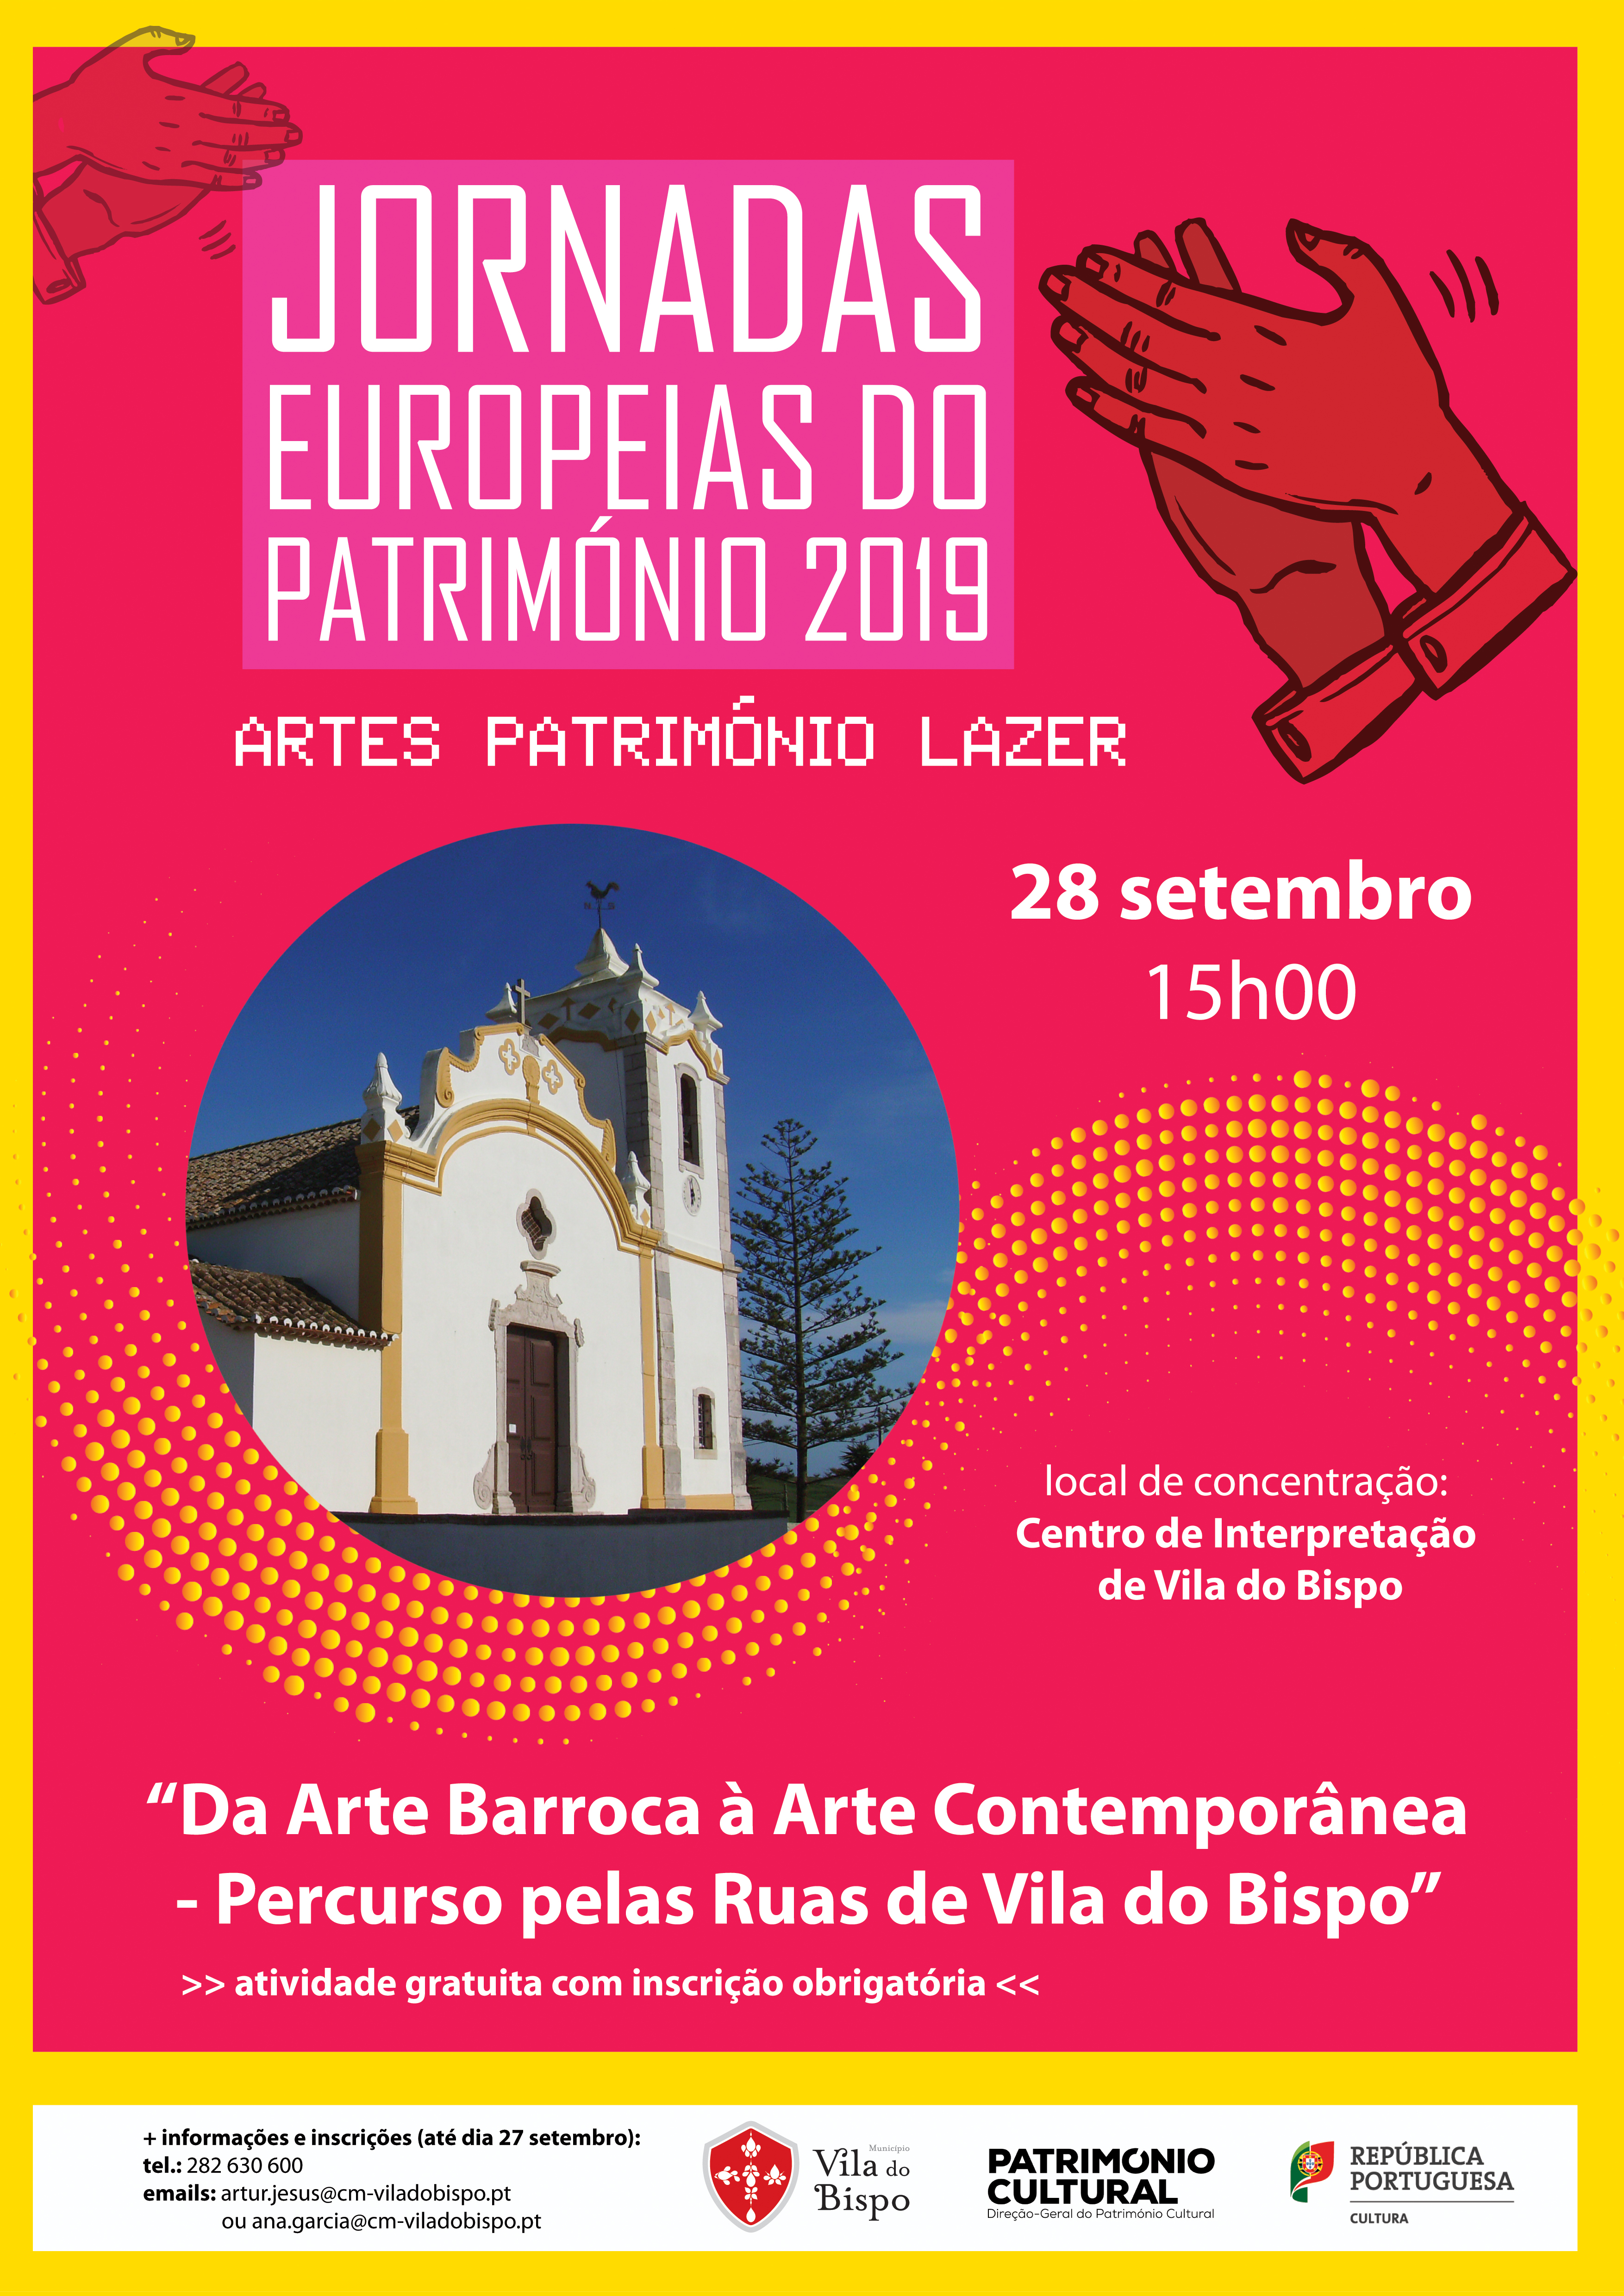 “Da Arte Barroca à Arte Contemporânea – Percurso pelas Ruas de Vila do Bispo” integrado nas  Jornadas Europeias do Património 2019